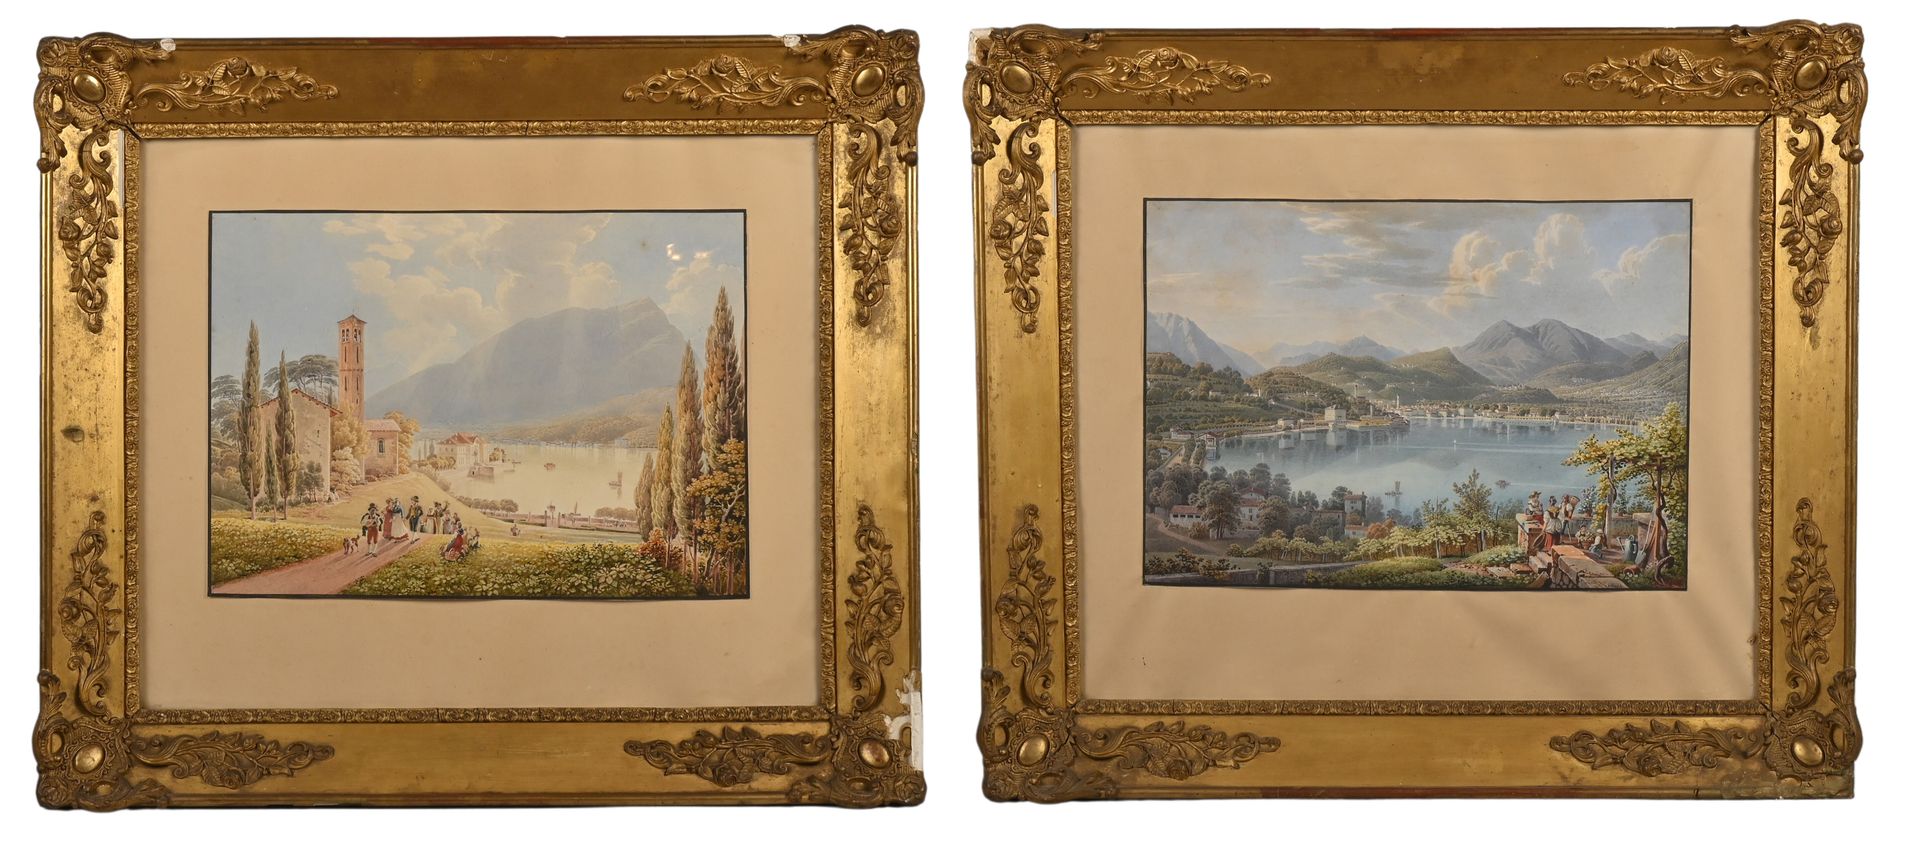 Null Gabriele II LORY
(Berna 1784 - ? 1846) 
Vedute di laghi di montagna con con&hellip;